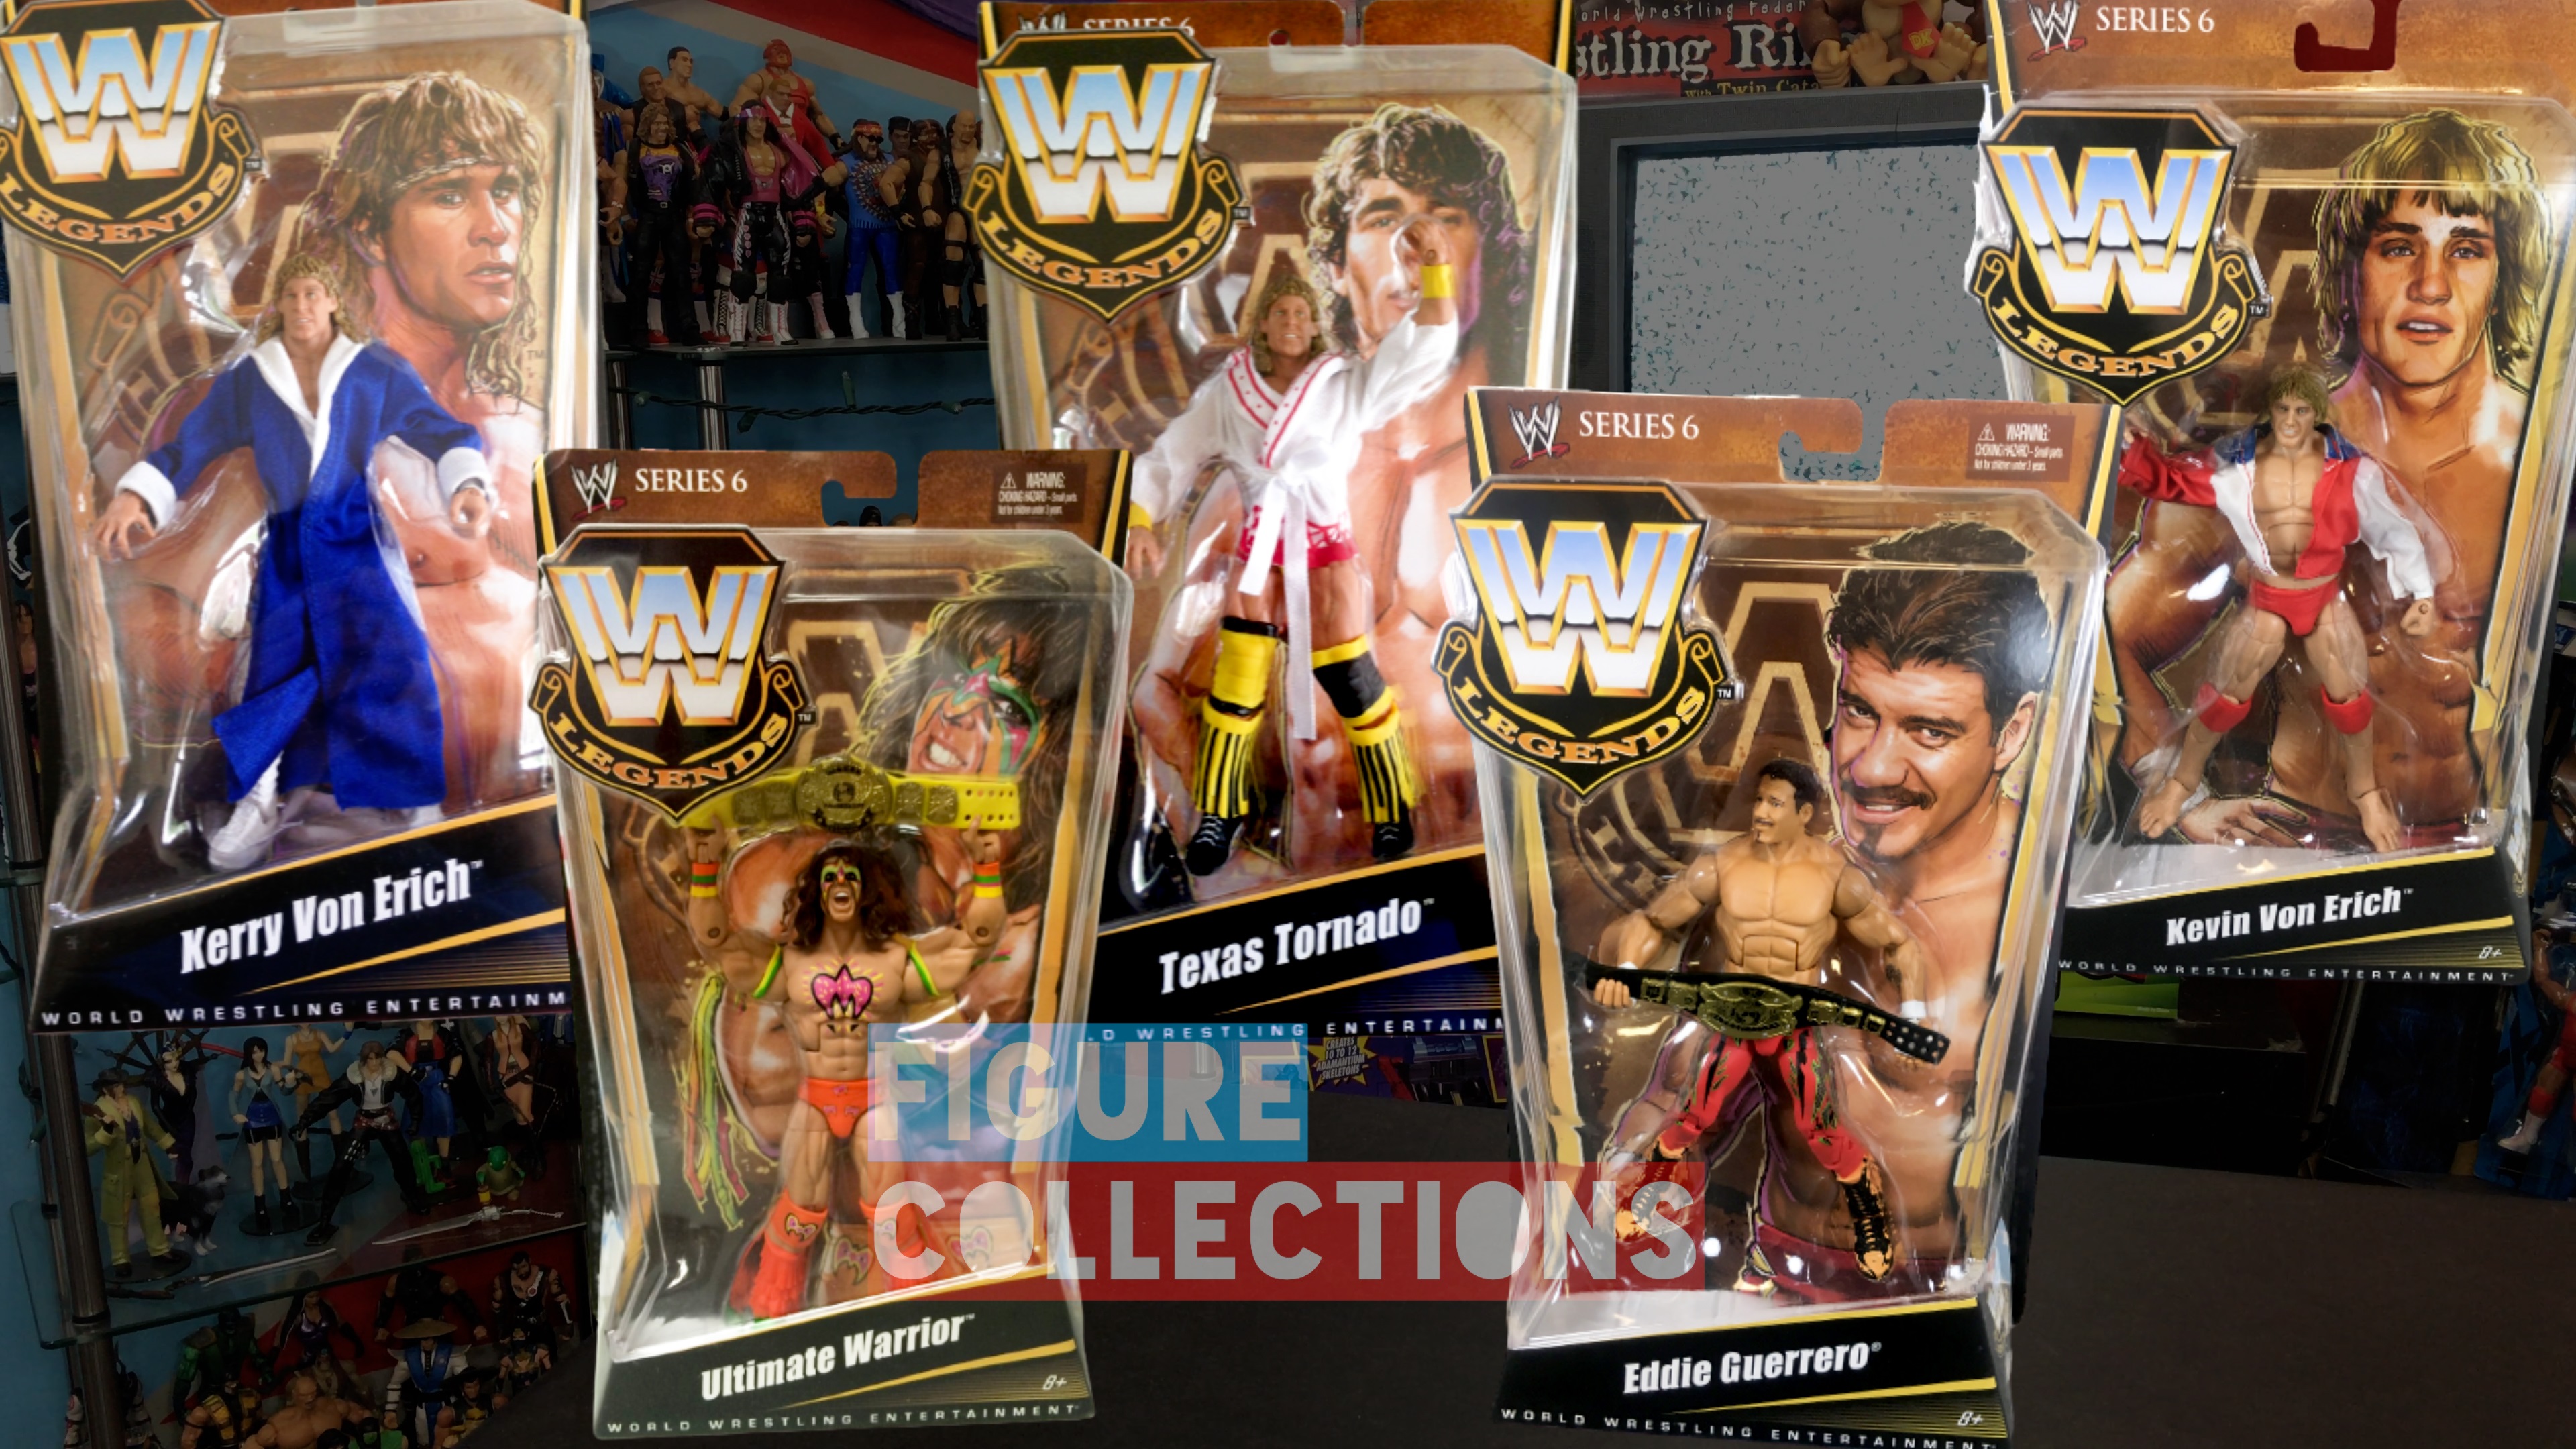 WWE Wrestling Mattel Elite Legends Series 6 Eddie Guerrero Kerry Von Erich Kevin Von Erich Texas Tornado The Ultimate Warrior Figures Set Picture Checklist